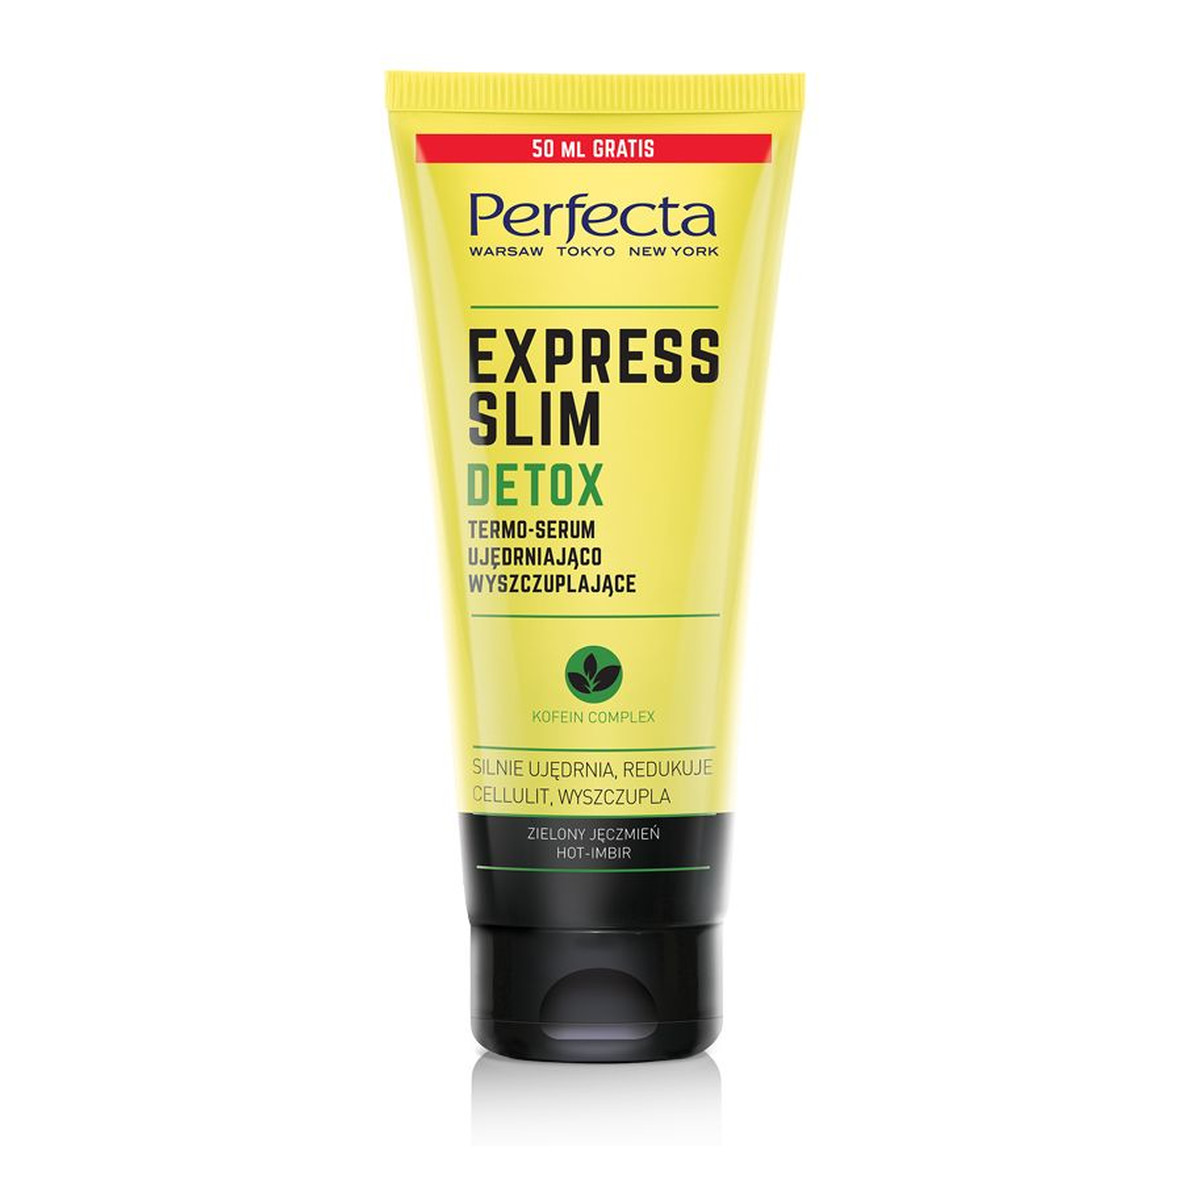 Perfecta Express Slim Detox termo-serum ujędrniająco-wyszczuplające Zielony Jęczmień 250ml